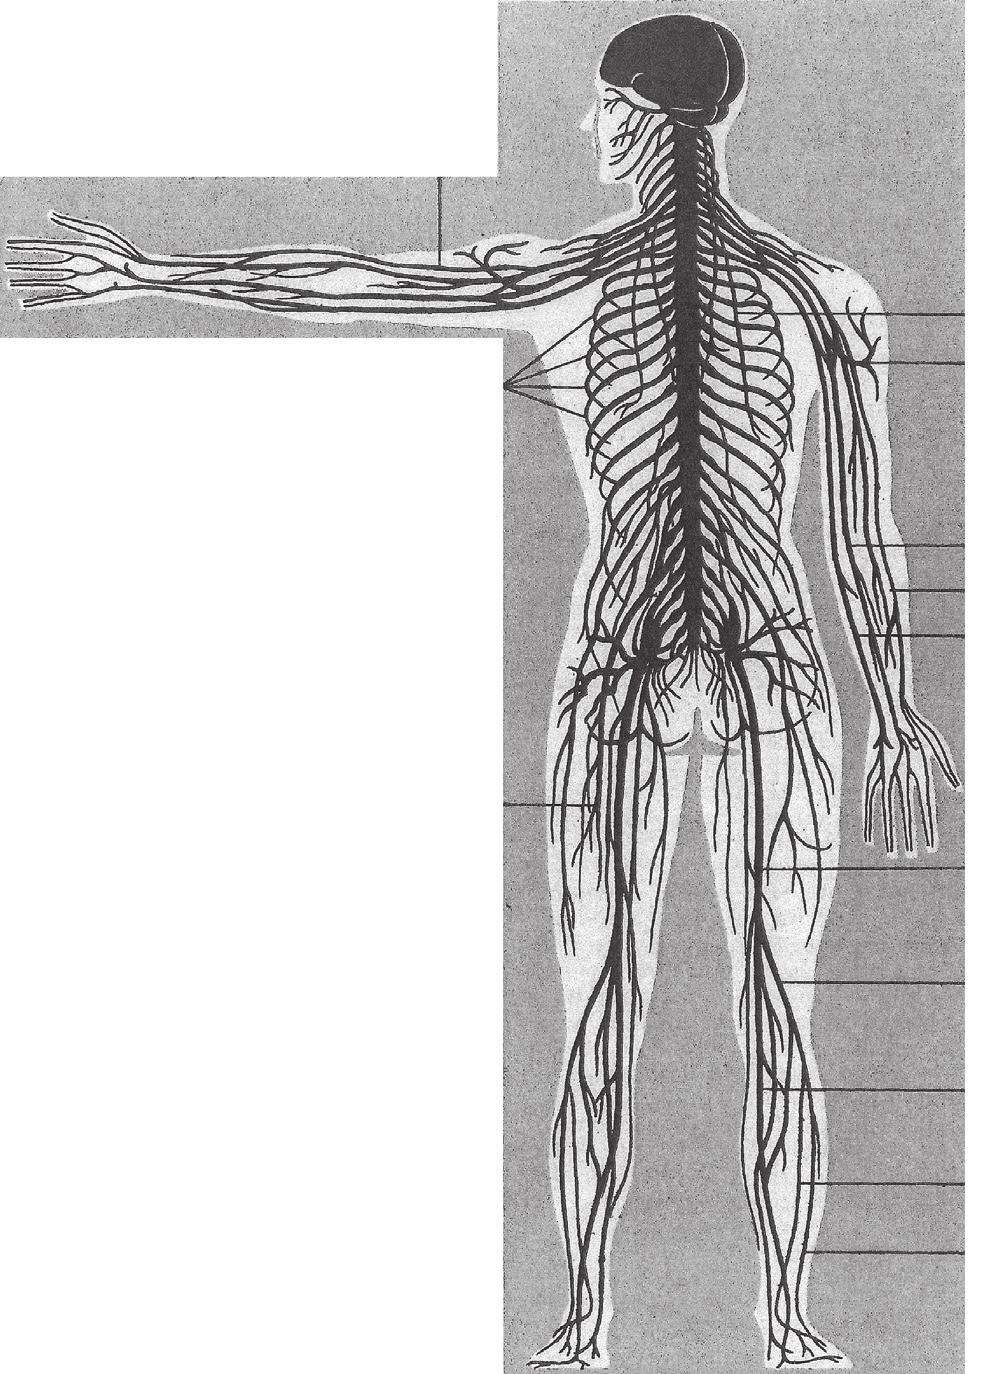 106 MILAN NAKONEČNÝ / OBECNÁ PSYCHOLOGIE Základní dělení soustavy nervového systému: nervový systém periferní centrální autonomní kontroluje činnost vnitřních orgánů kosterní kontroluje pohyby